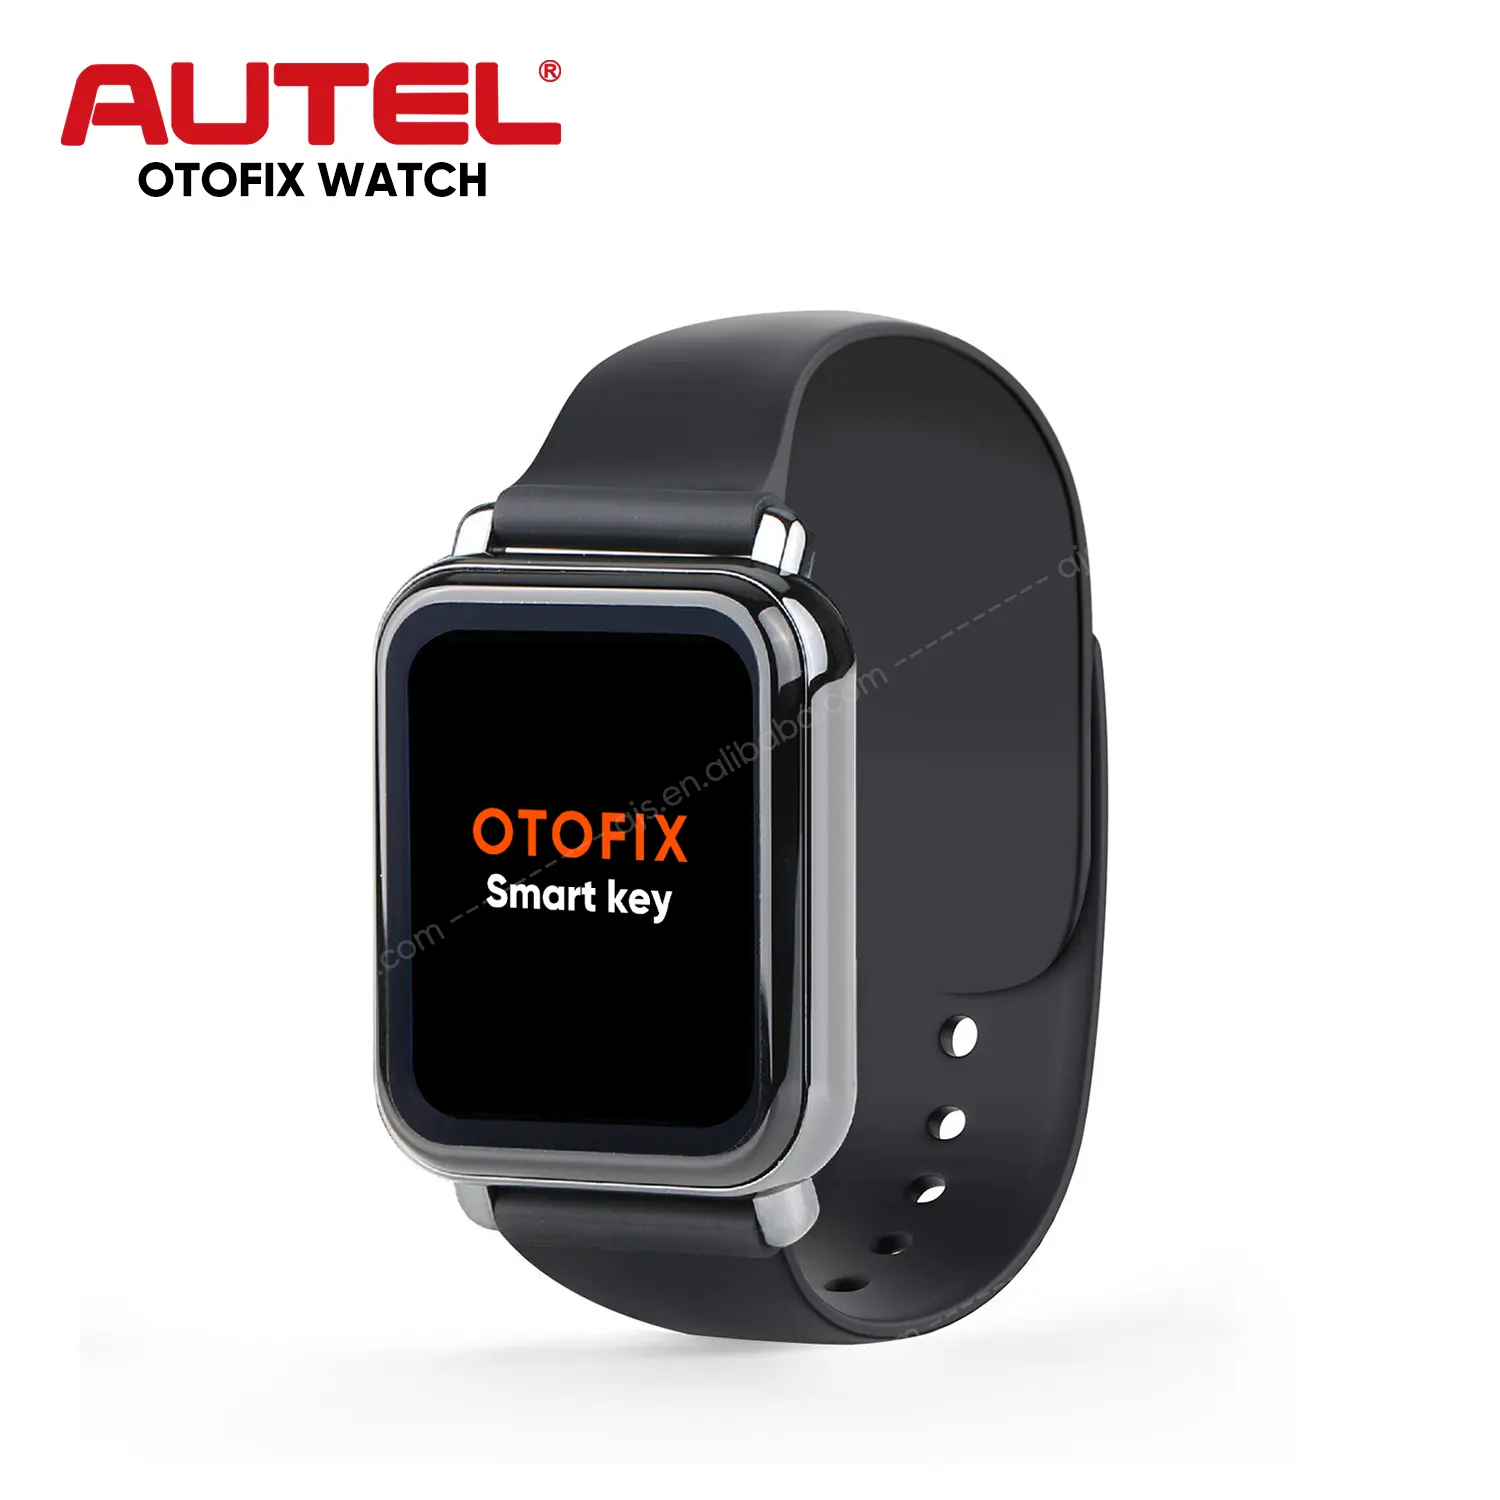 Autel negozio ufficiale OTOFIX Smart Watch chiave universale auto utilizzata con Altra chiave iphey programmazione duplicazione macchina utensile